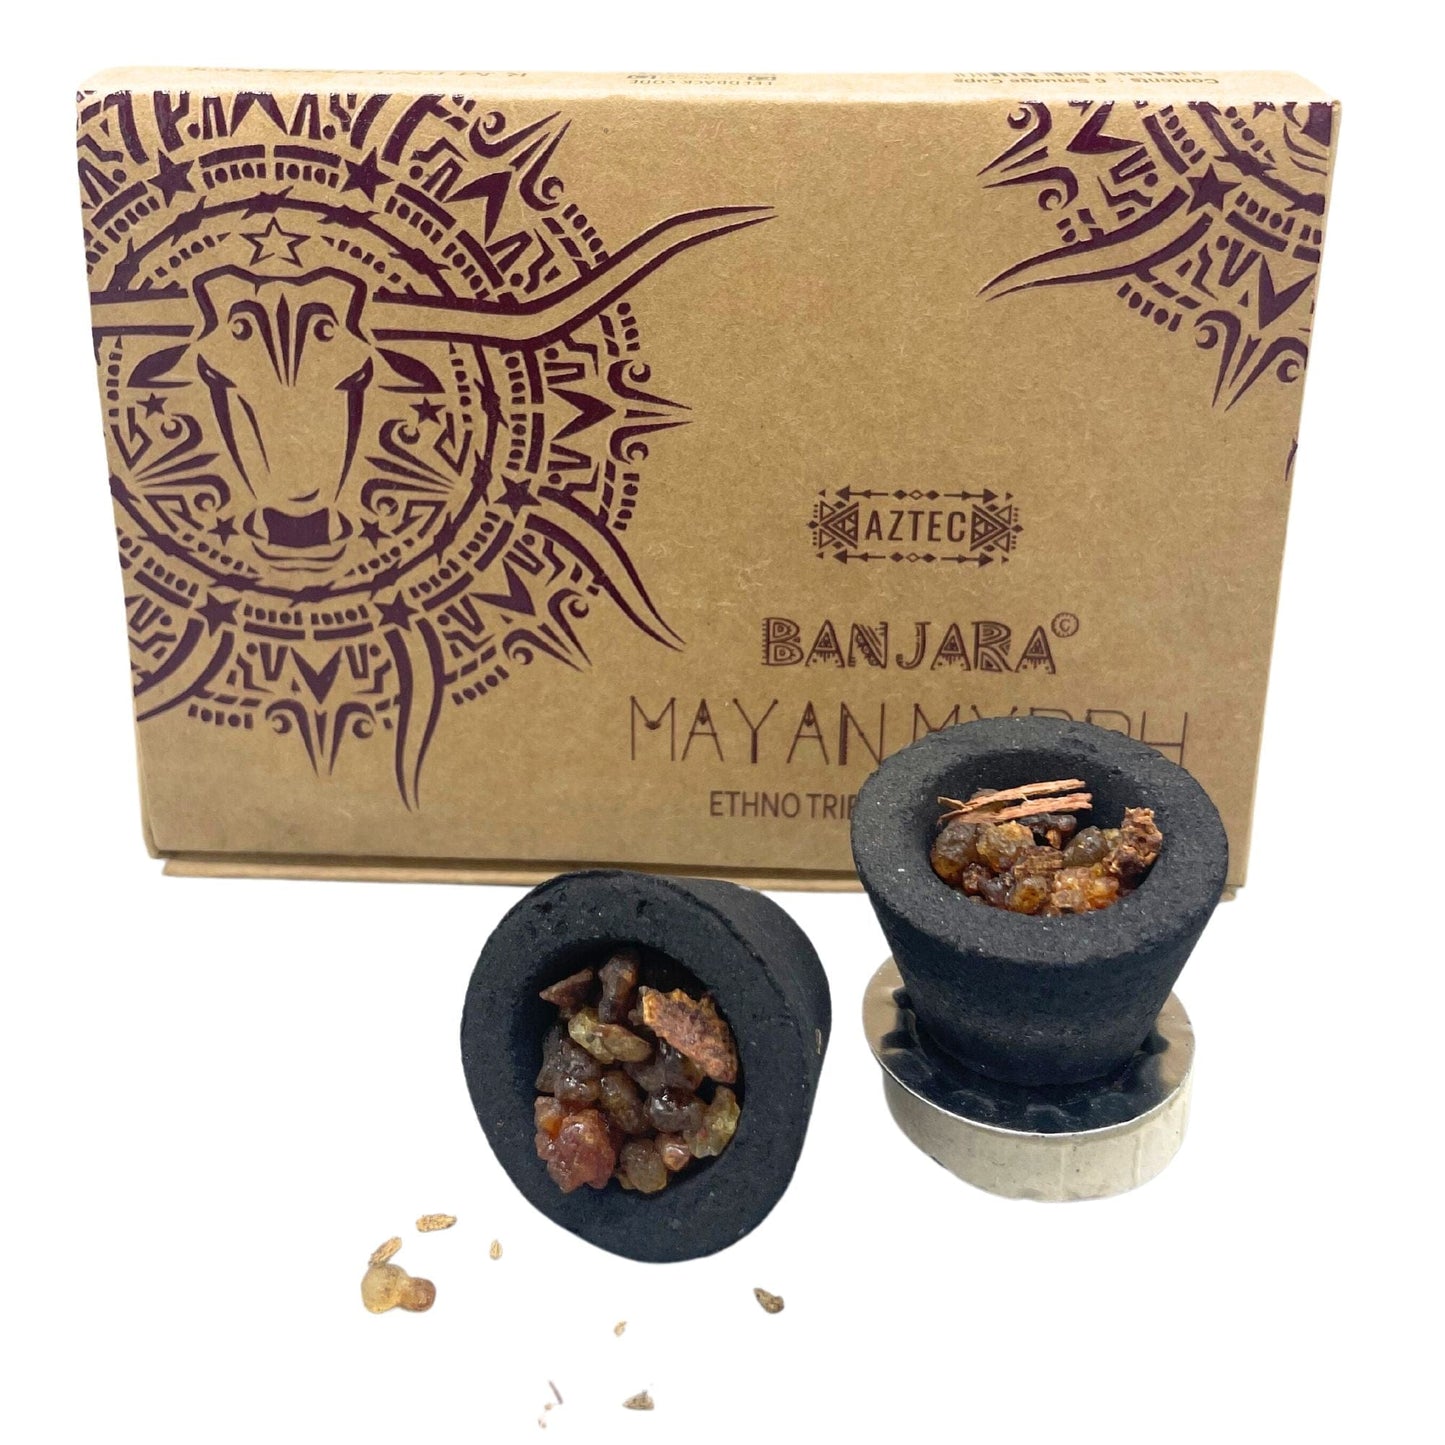 Banjara Resin Cups - Mayan Myyrh - Kaftan direct